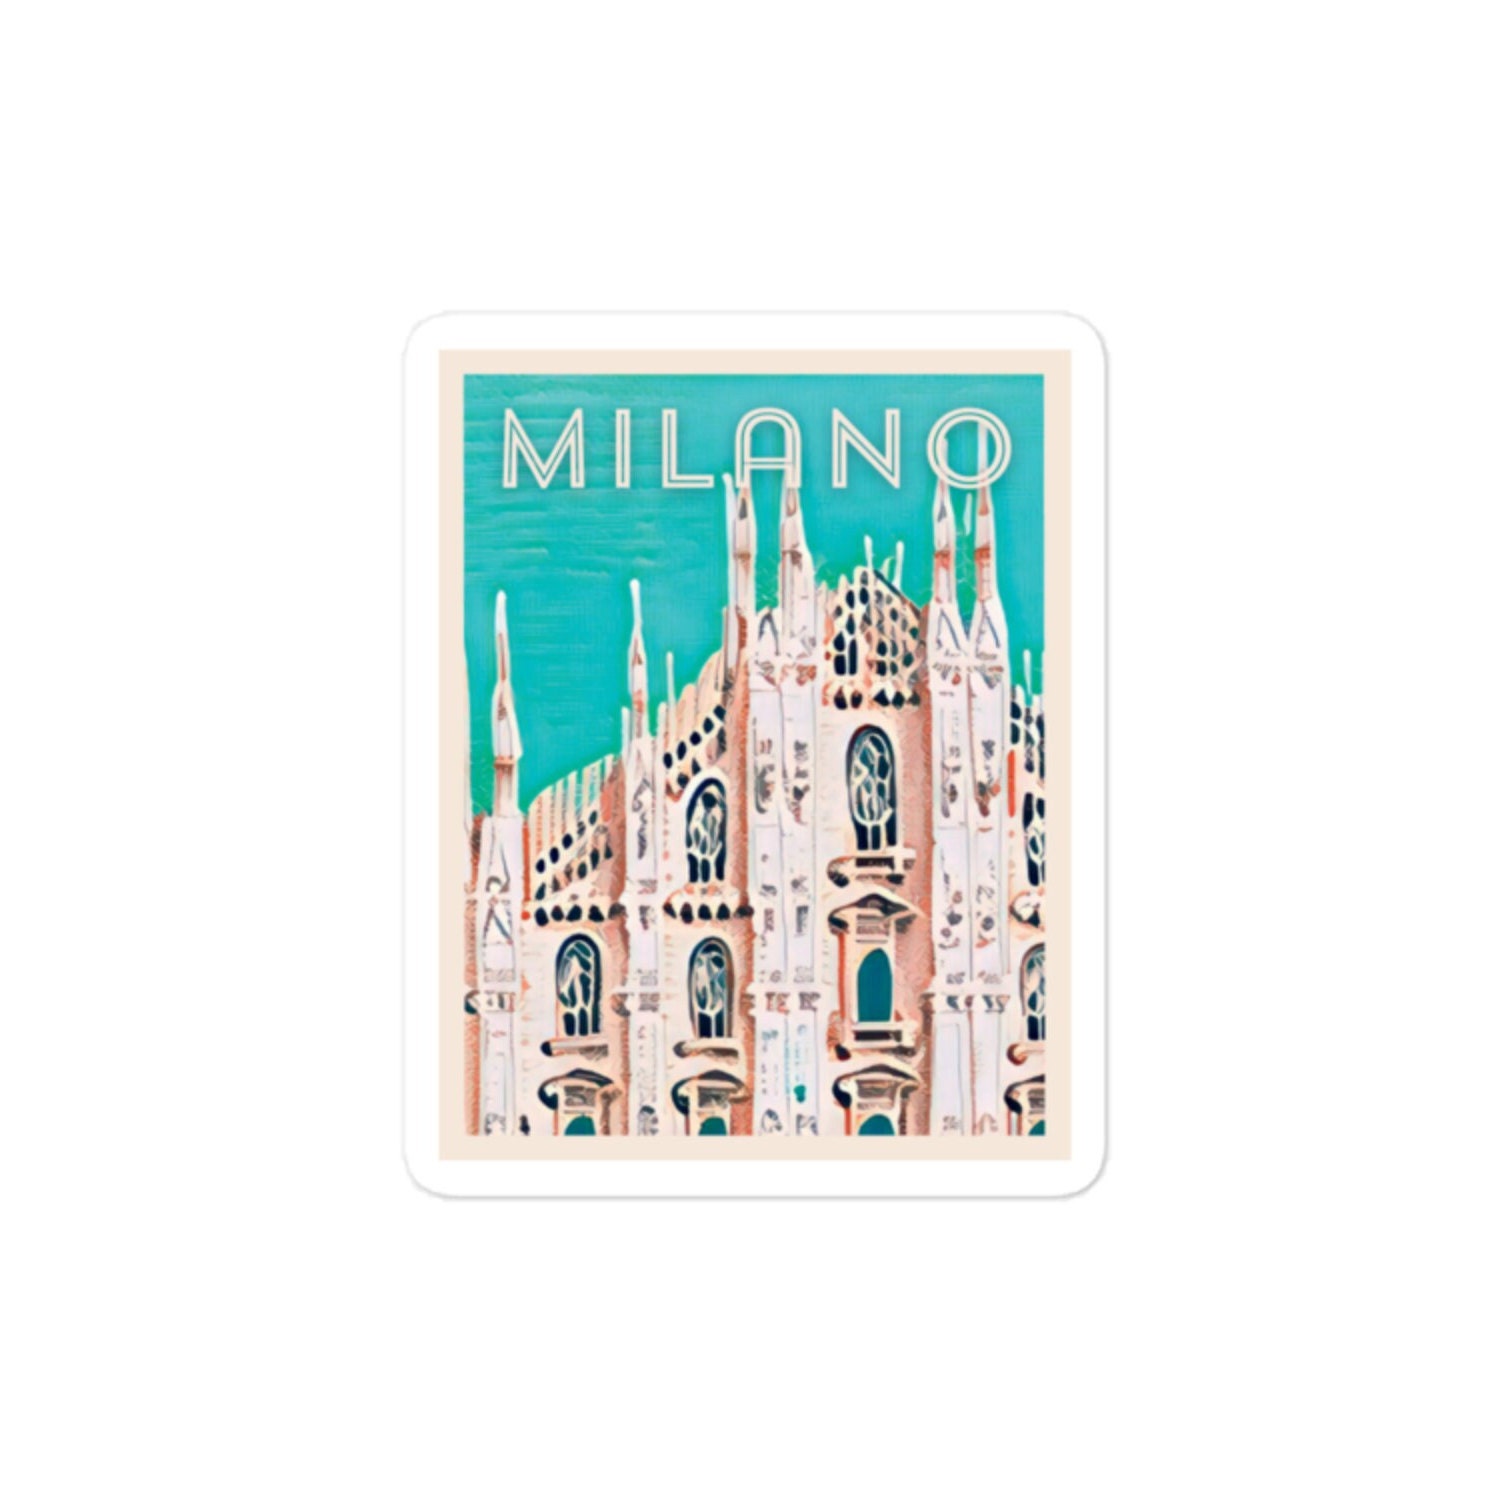 Milan Stickers